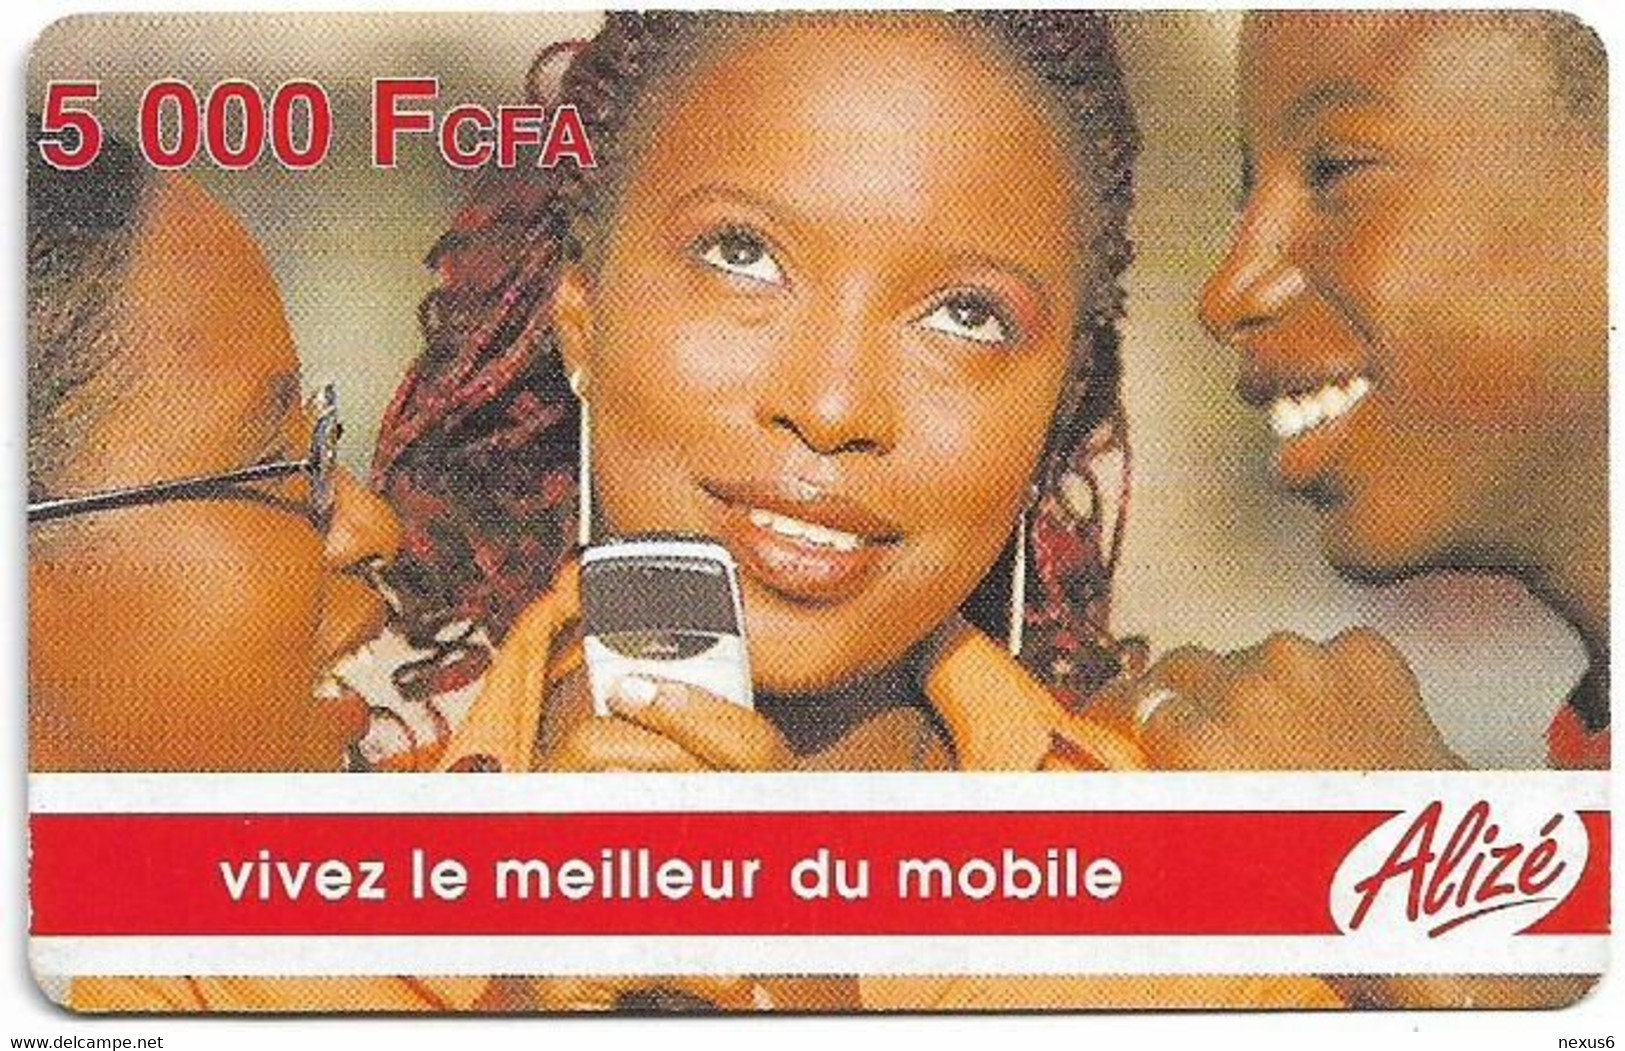 Senegal - Alizé - Vivez Le Meilleur Du Mobile - 3 People, GSM Refill 5.000CFA, Used - Senegal